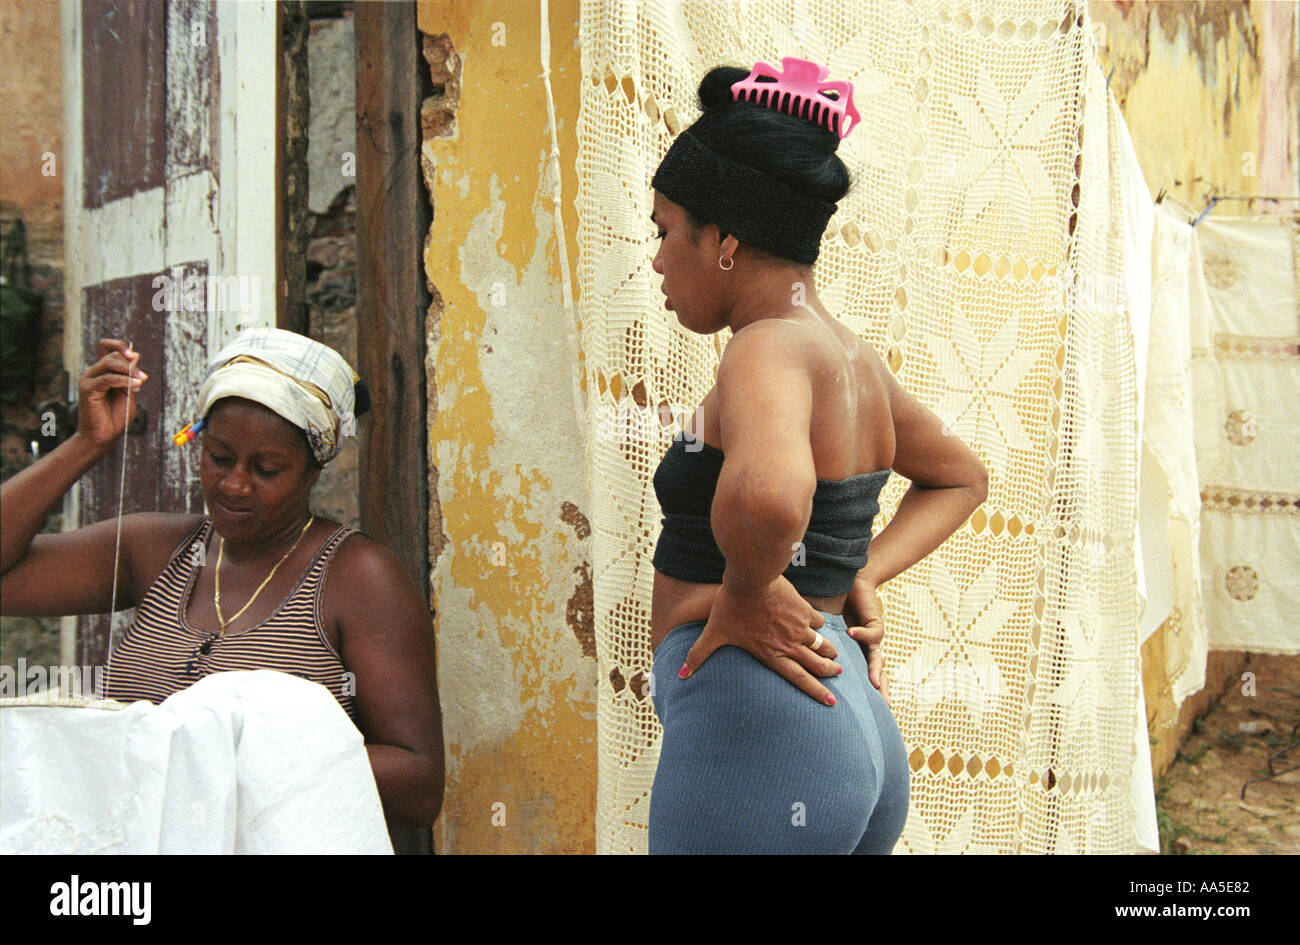 Tumblr Nude Cuban Women 43